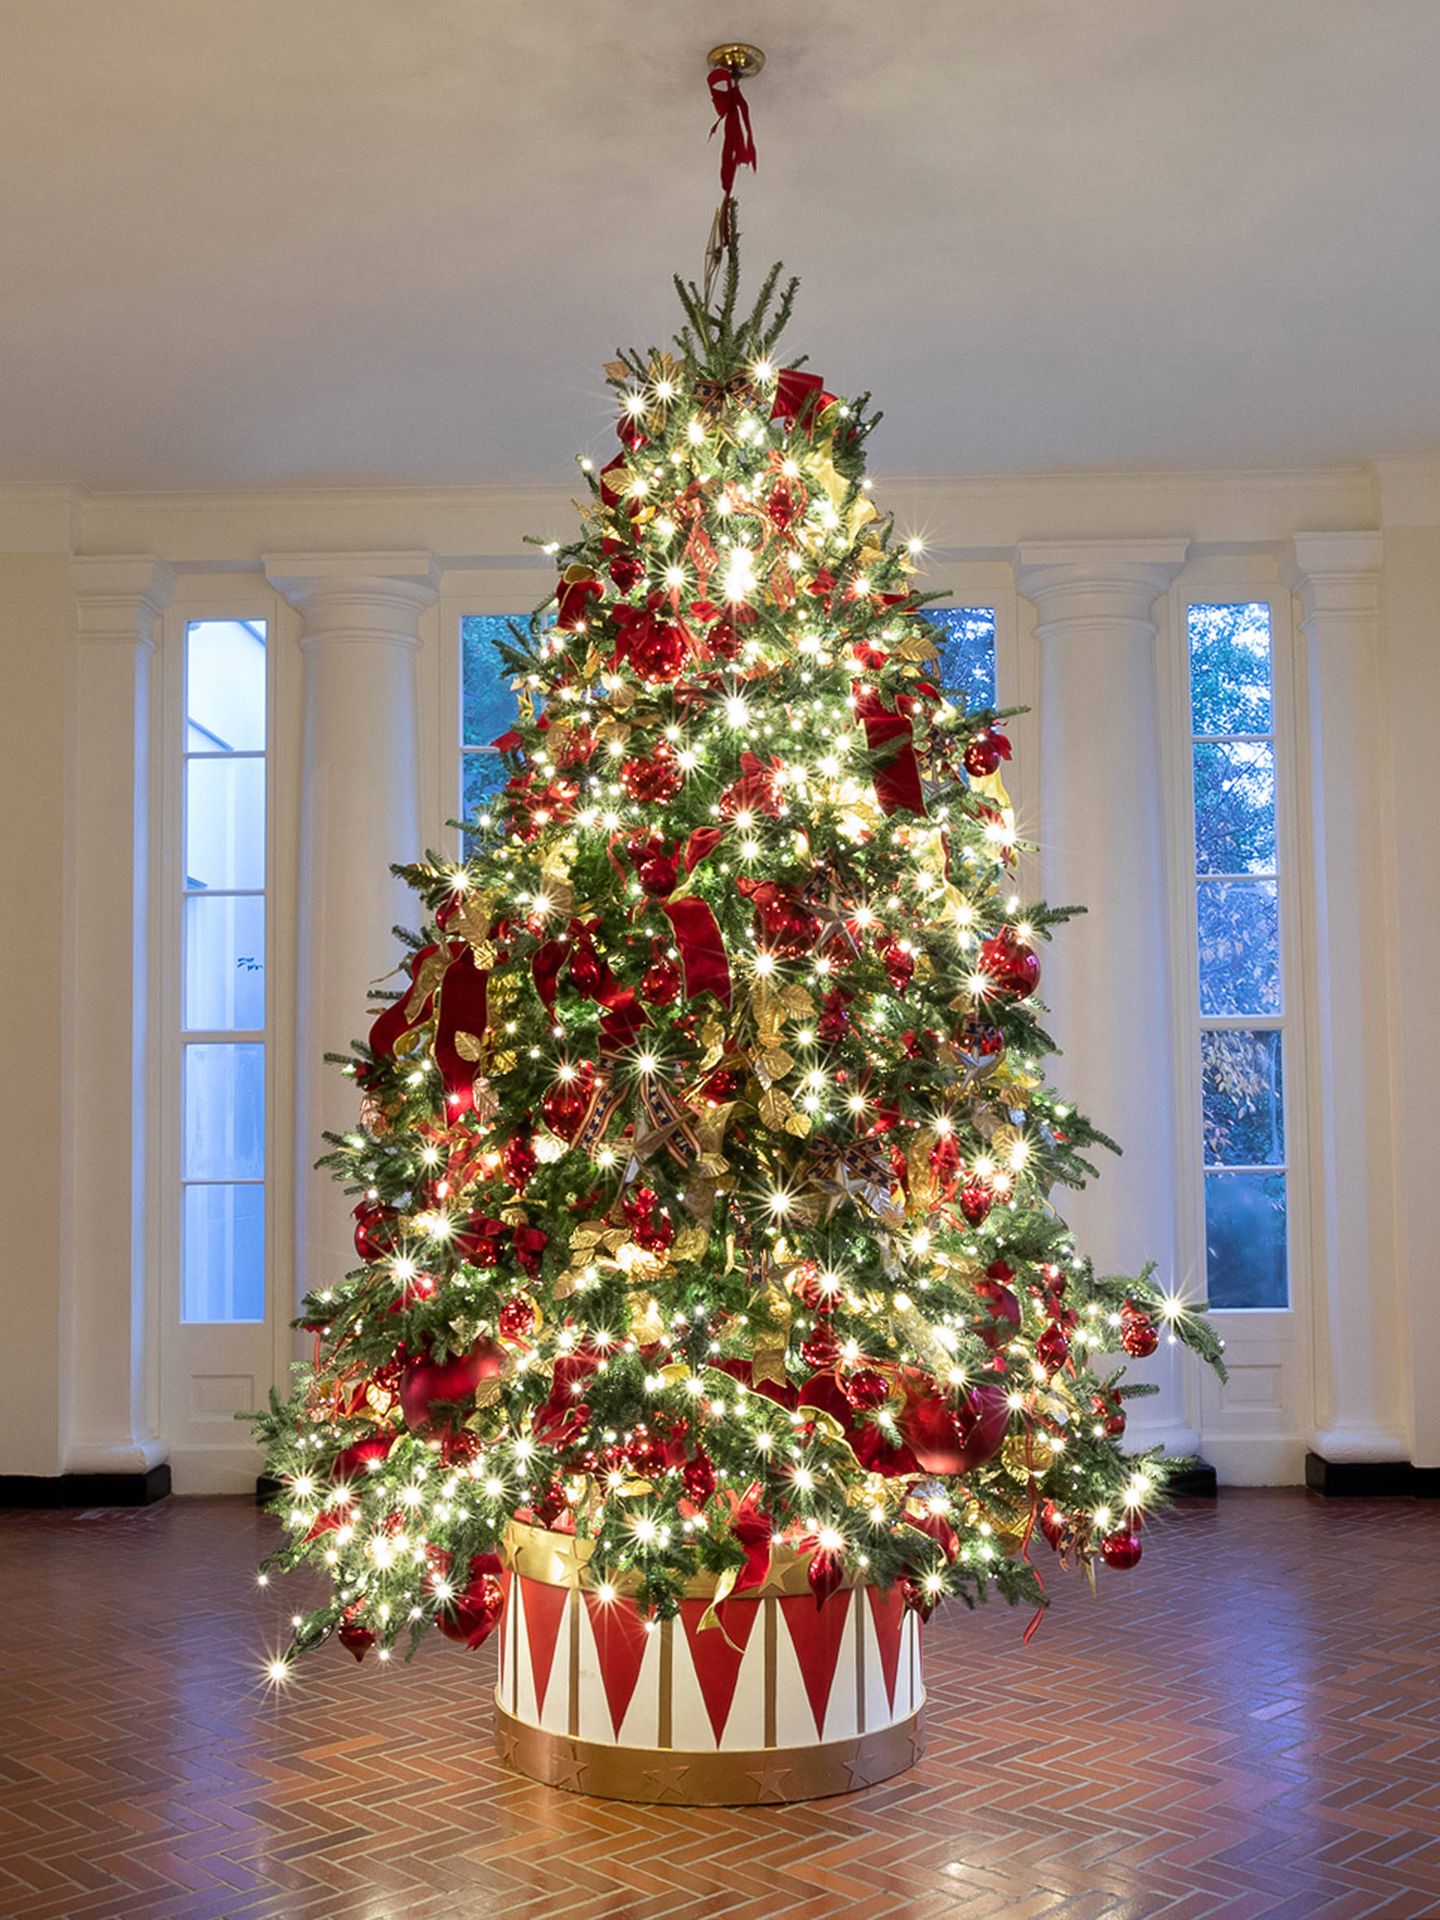 Uno de los árboles de Navidad. (Andrea Hanks/Casa Blanca)